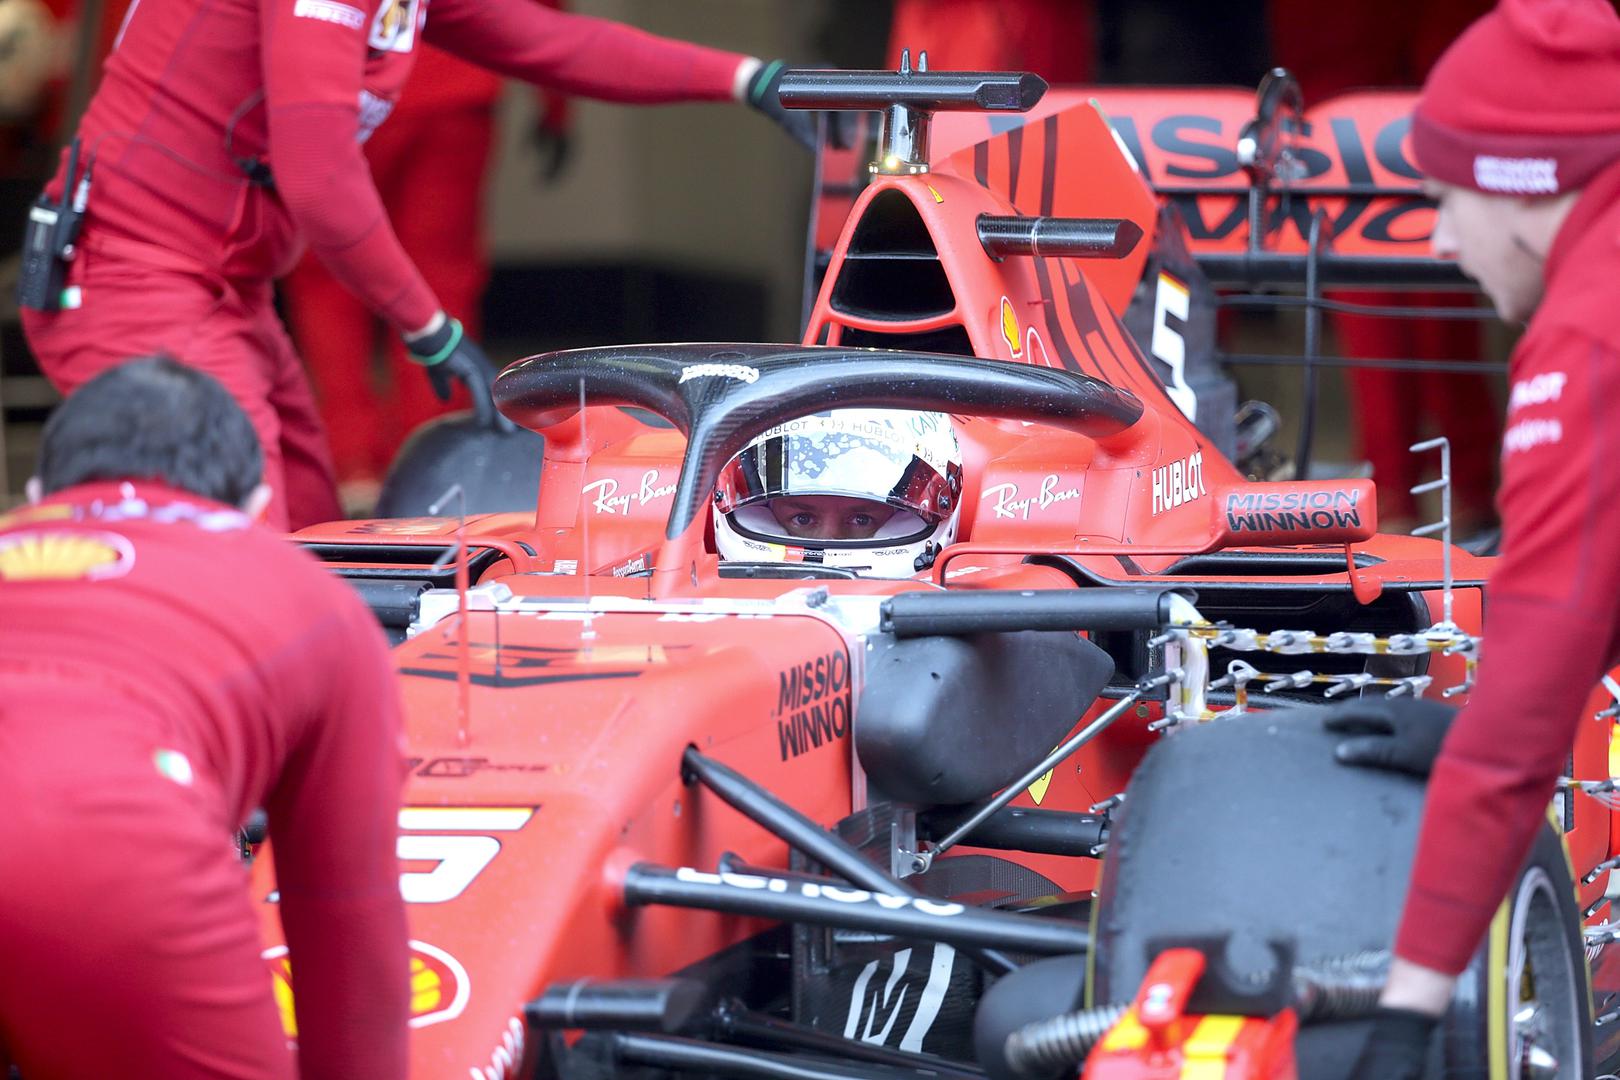 Rezultati prvih testiranja bolida na stazi u Barceloni uoči nove sezone formule 1 istaknuli su Ferrari za glavne favorite ovogodišnjeg natjecanja